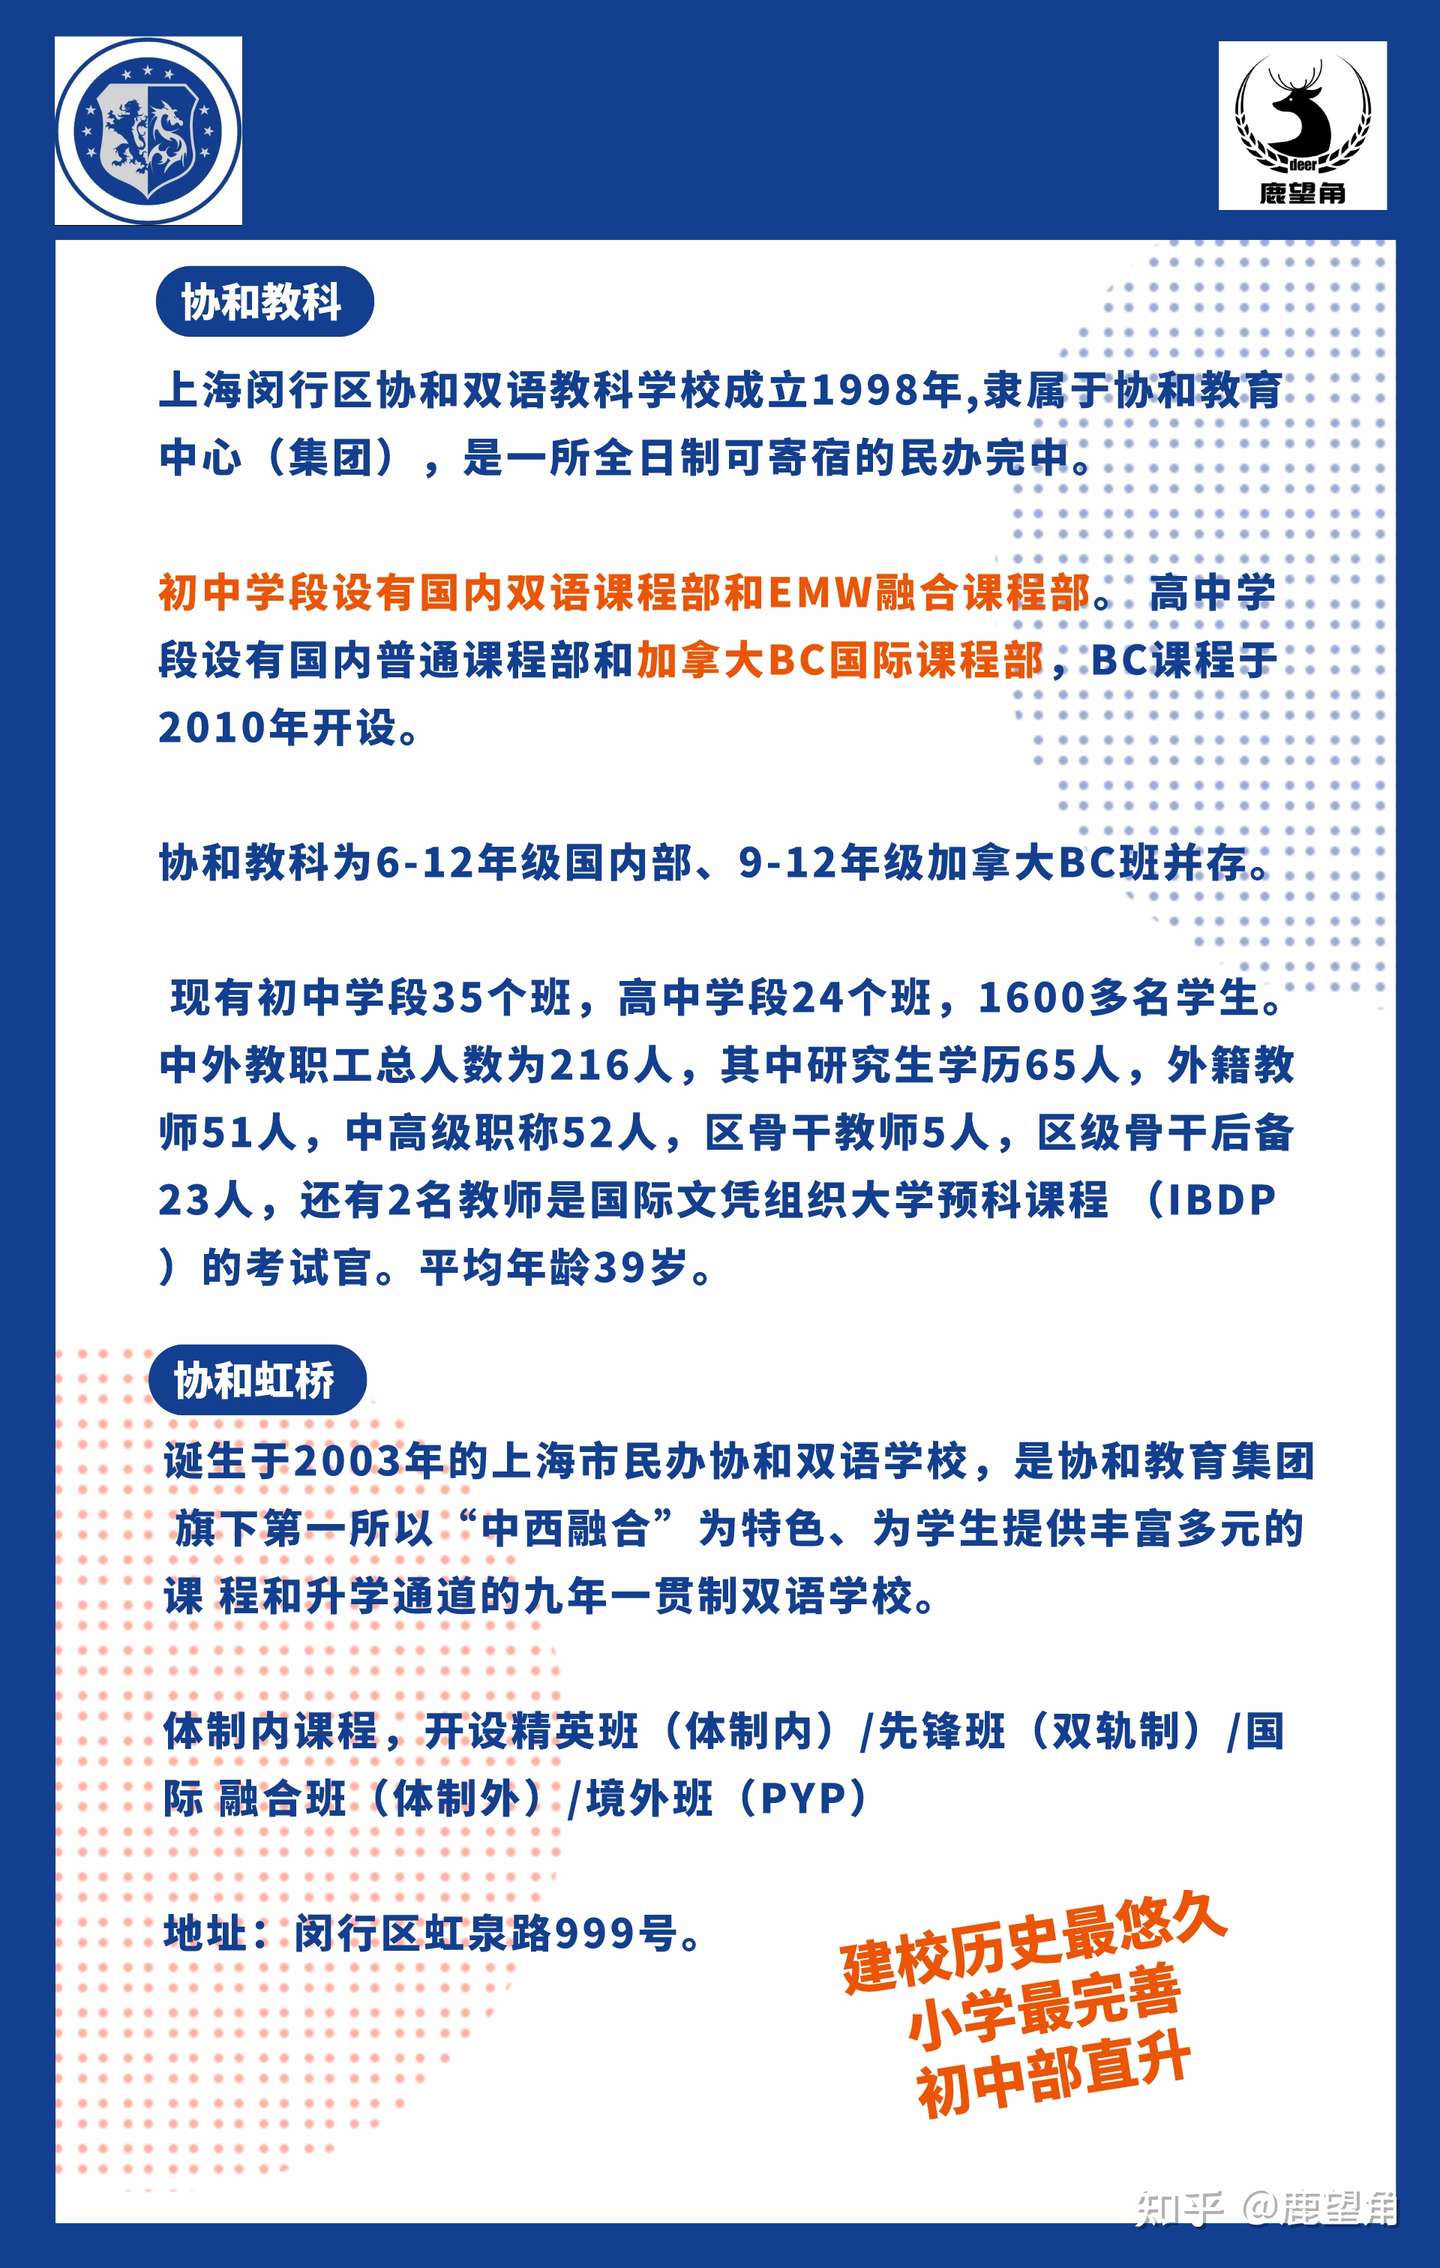 上海协和体系如何 协和古北 协和教科 协和尚音 青浦协和 协和虹桥 协和万源 浦东协和7大校区 知乎